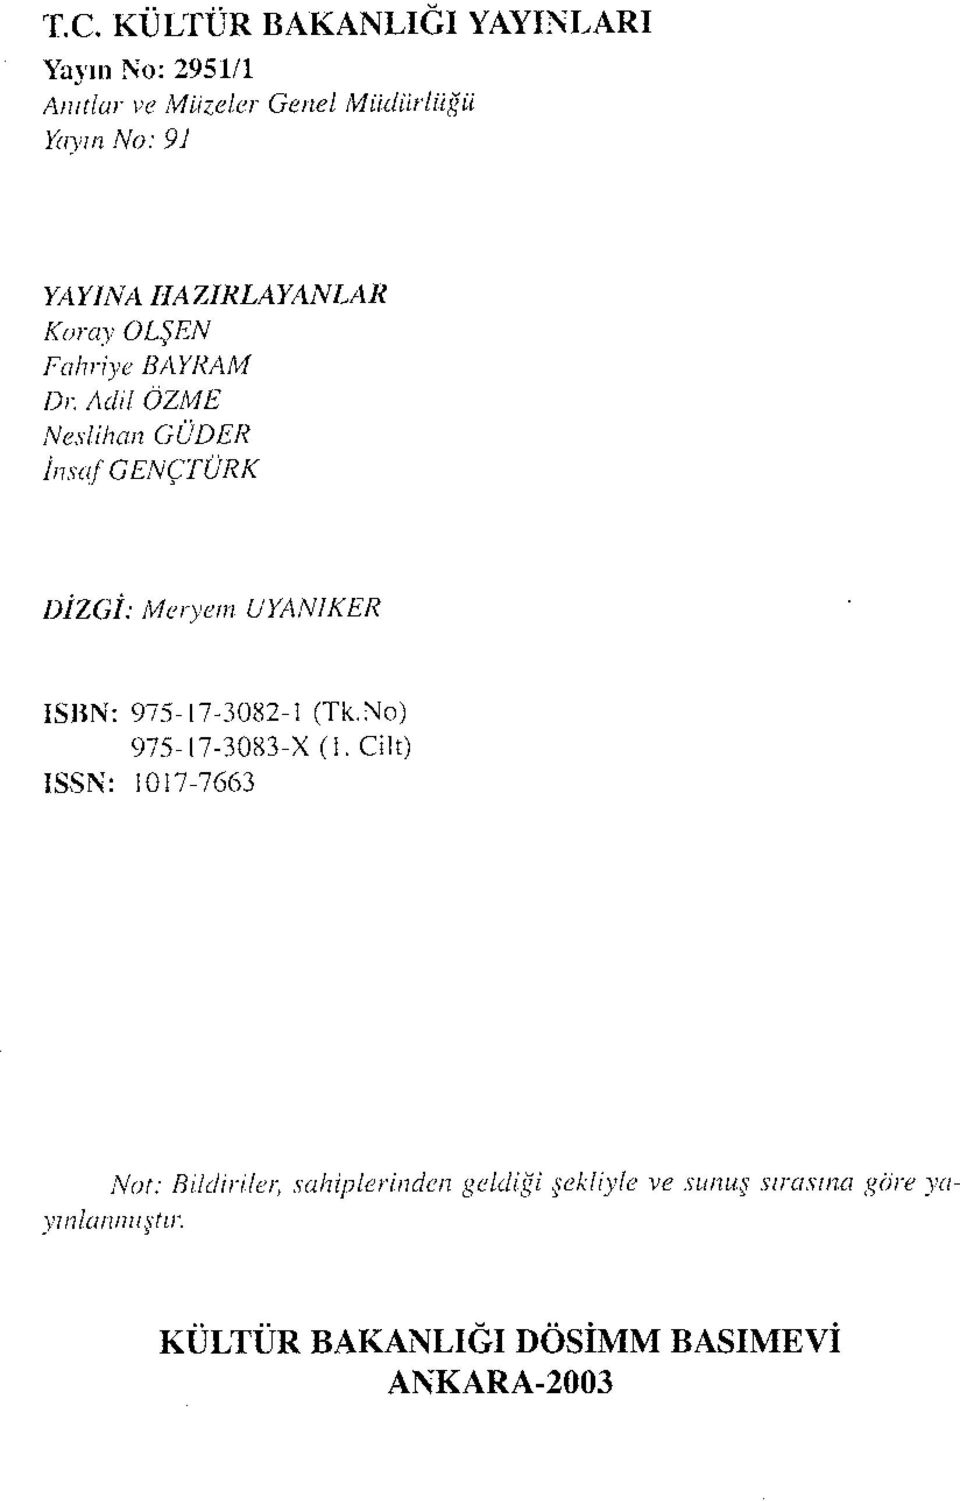 Adil ÖZME Neslihaıı GÜDER İnsafGENÇTÜRK DİZGİ: Meryem UYANJKER ISBN: 975-17-3082-1 (Tk.